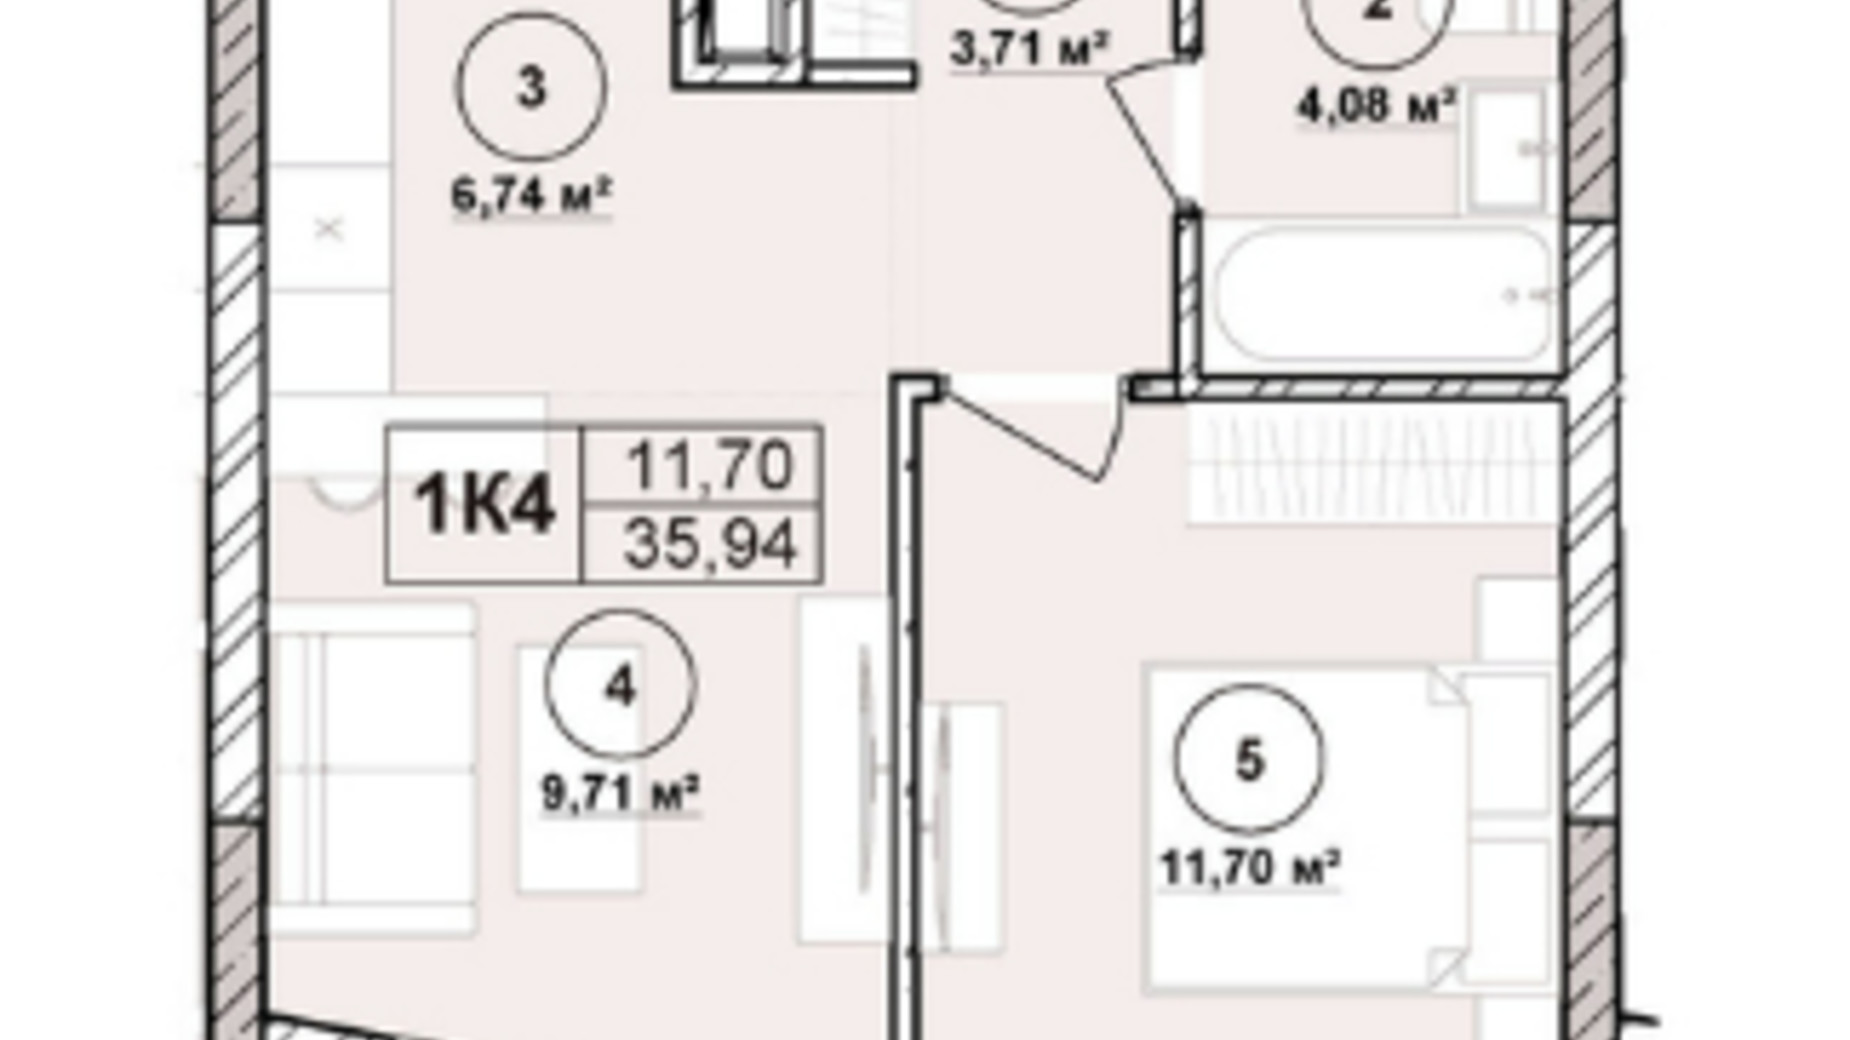 Планування апартаментів в ЖК Milltown 35.94 м², фото 673241